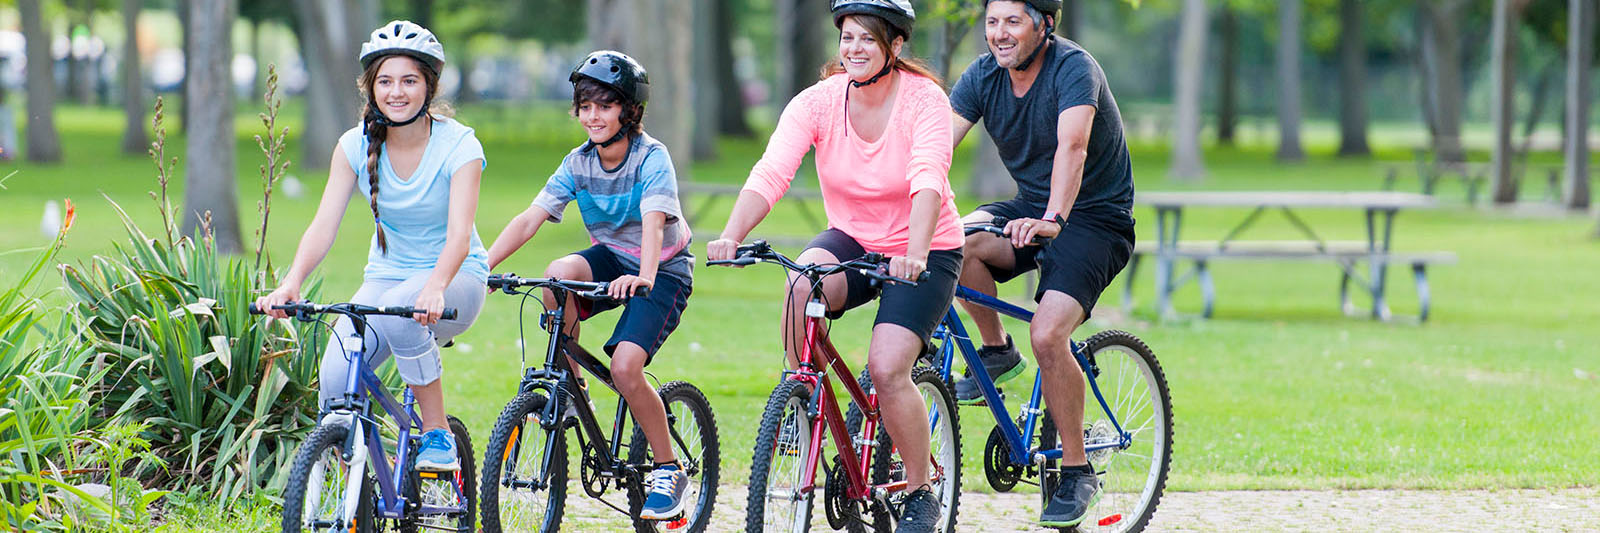 family-riding-bikes-through-park-1600x533